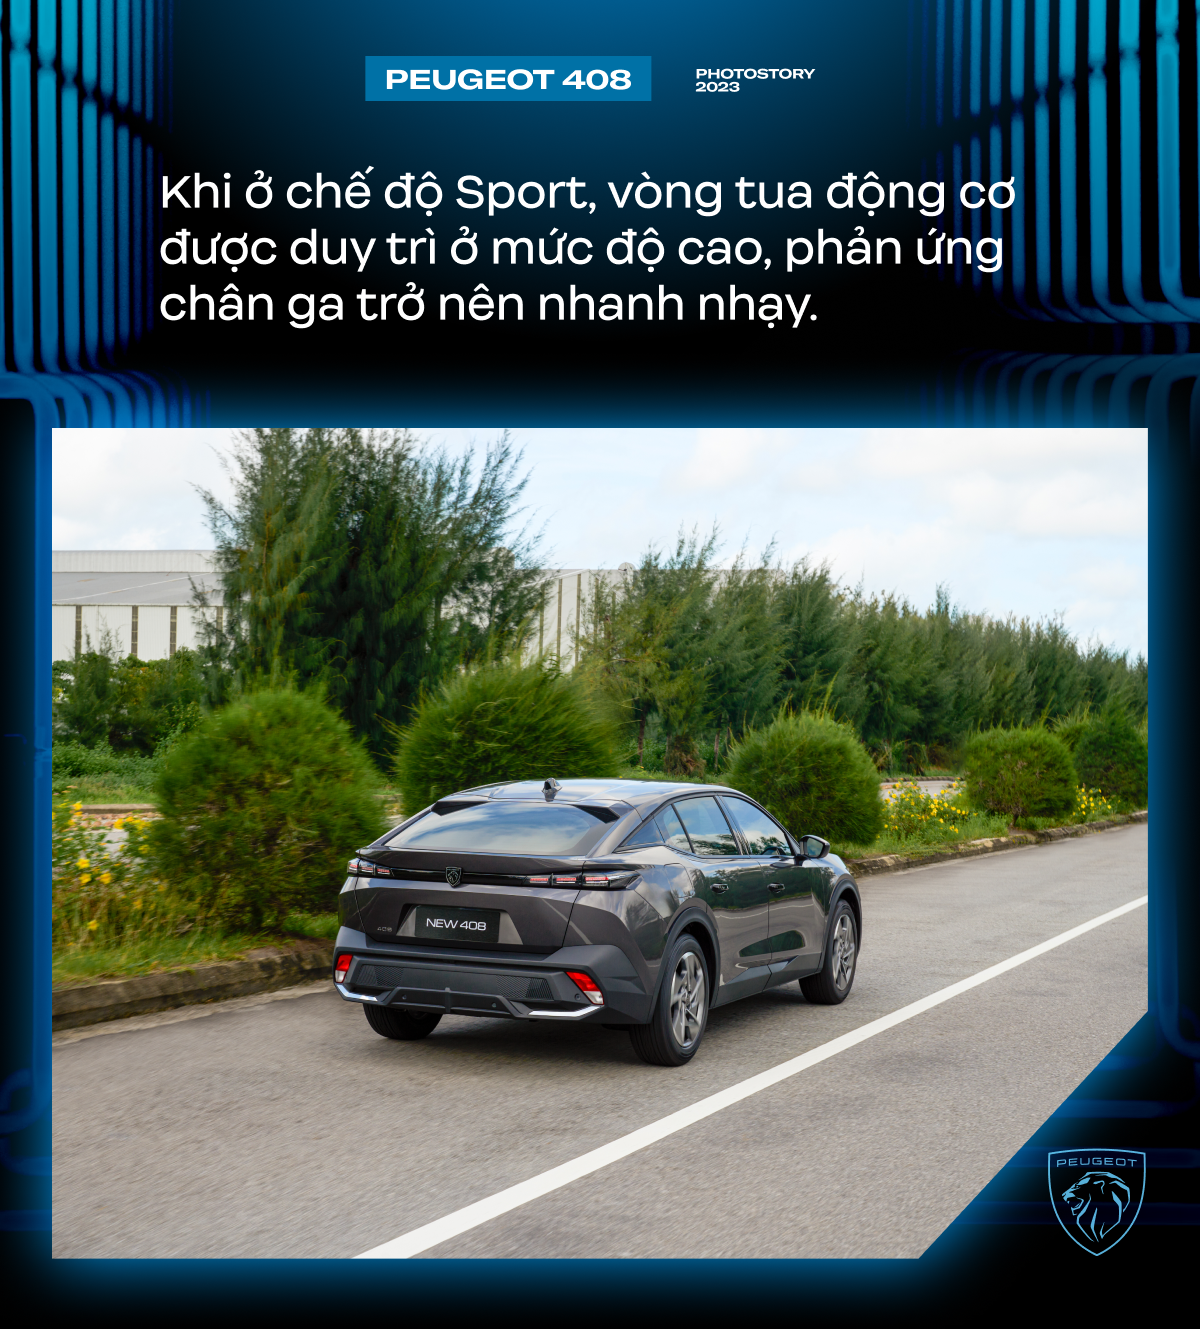 Peugeot 408 - Lựa chọn khác biệt cho người Việt ở phân khúc SUV hạng C - Ảnh 9.